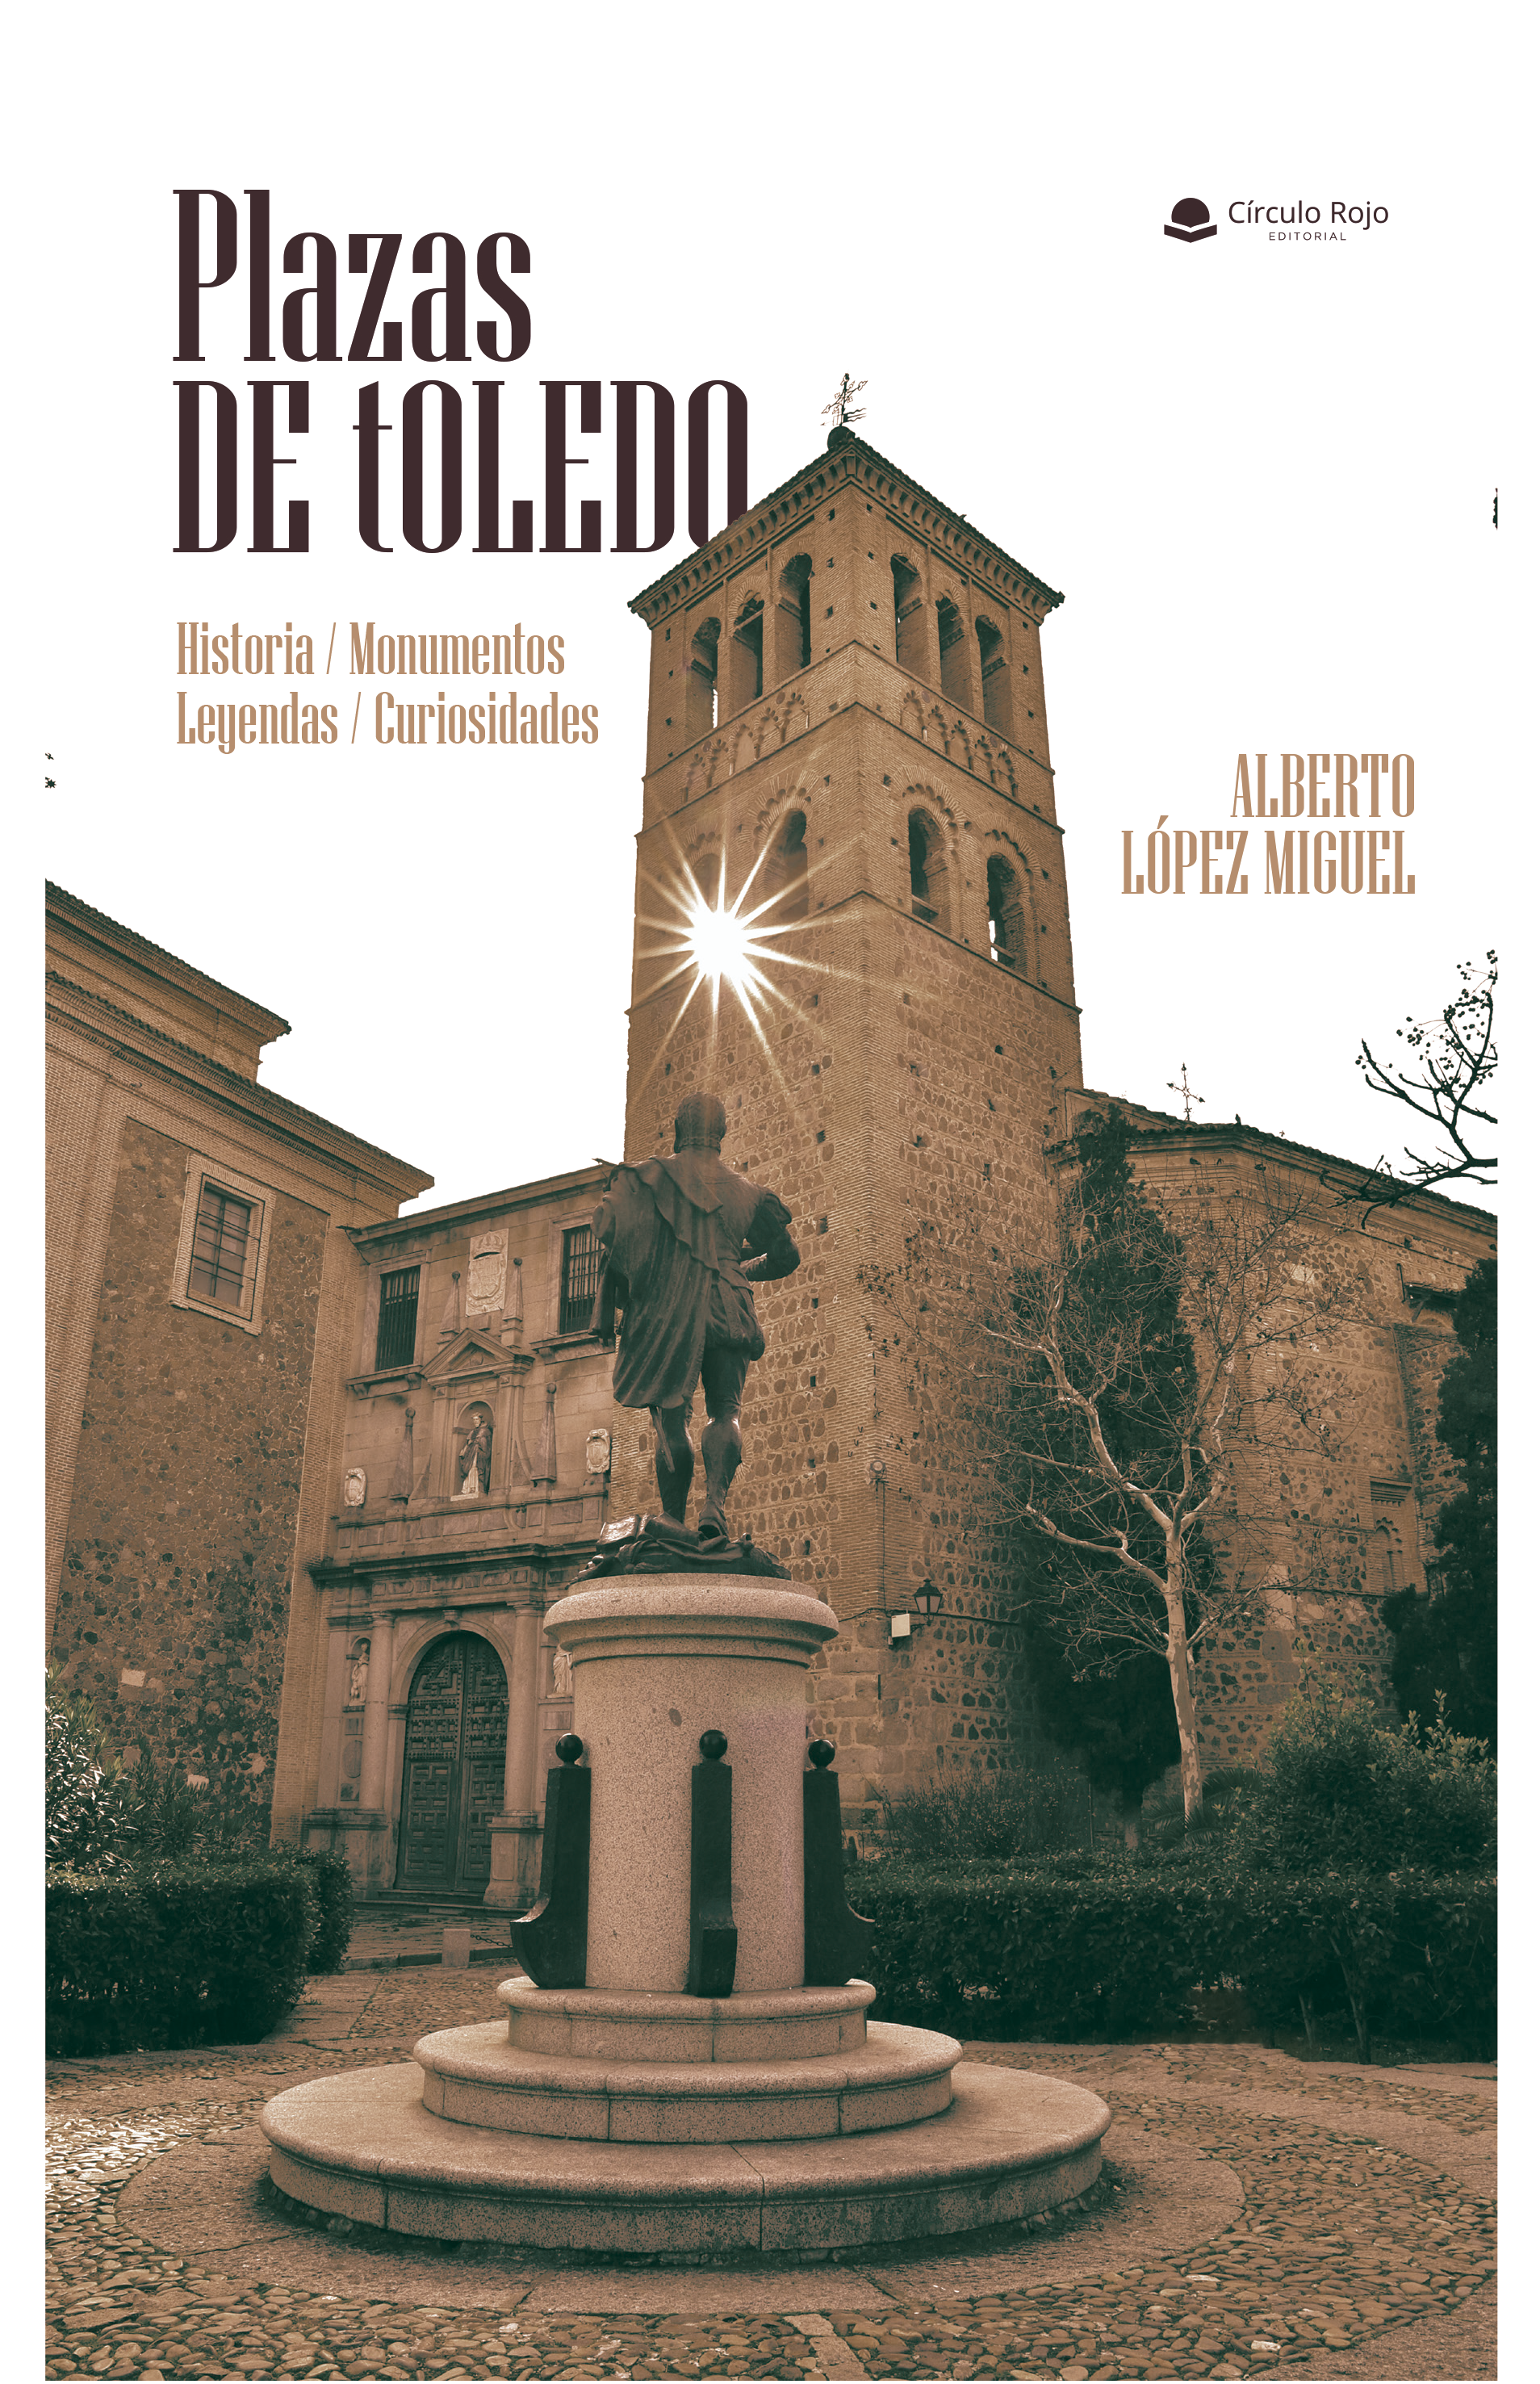 Plazas de Toledo. Historia / Monumentos / Leyendas / Curiosidades